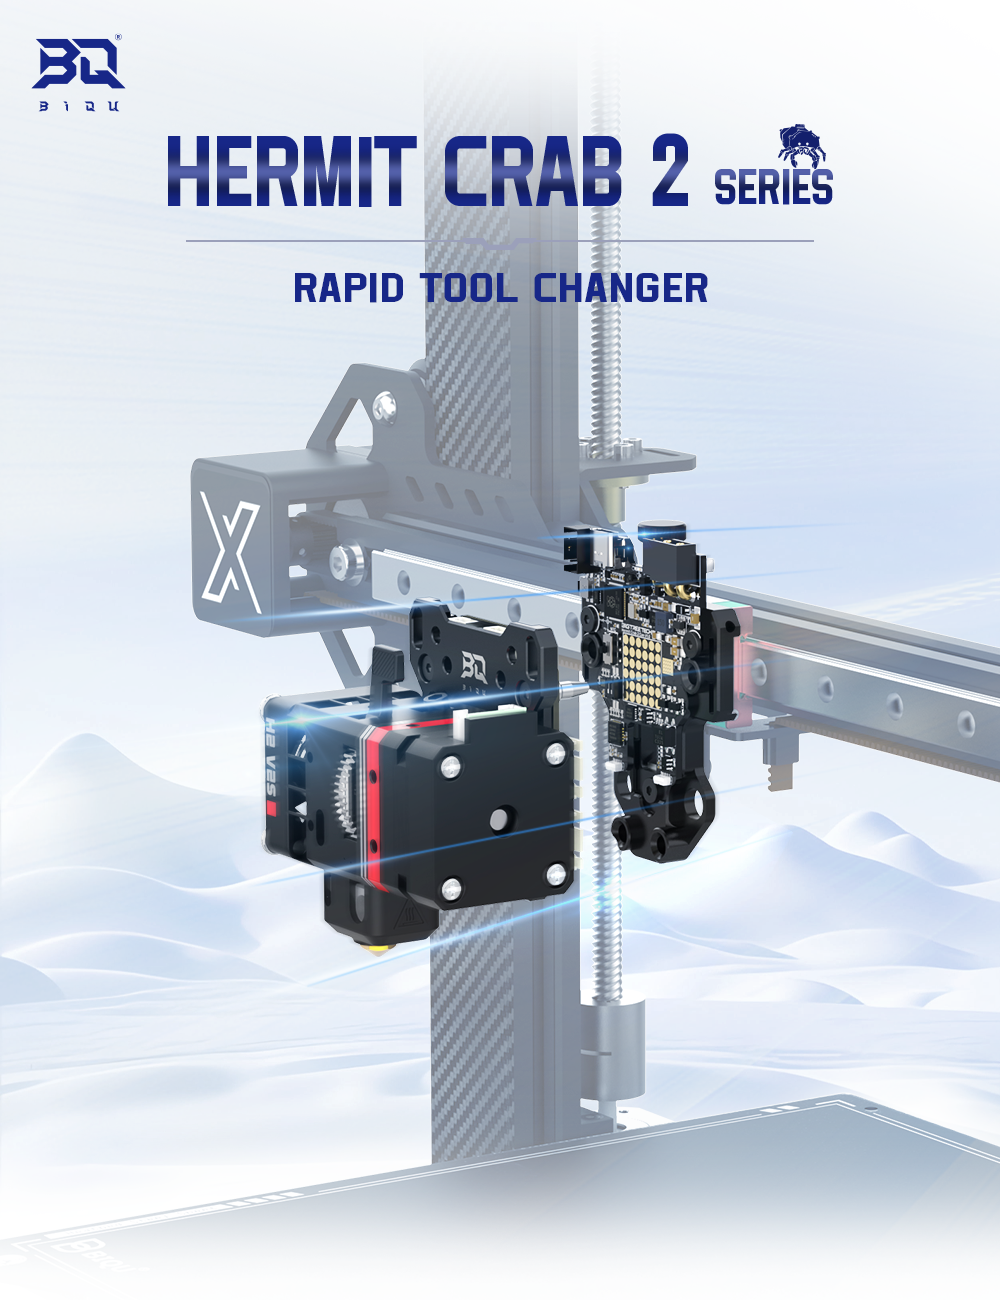 Hermit Crab 2 ist ein schneller Werkzeugwechsler für Hotends.